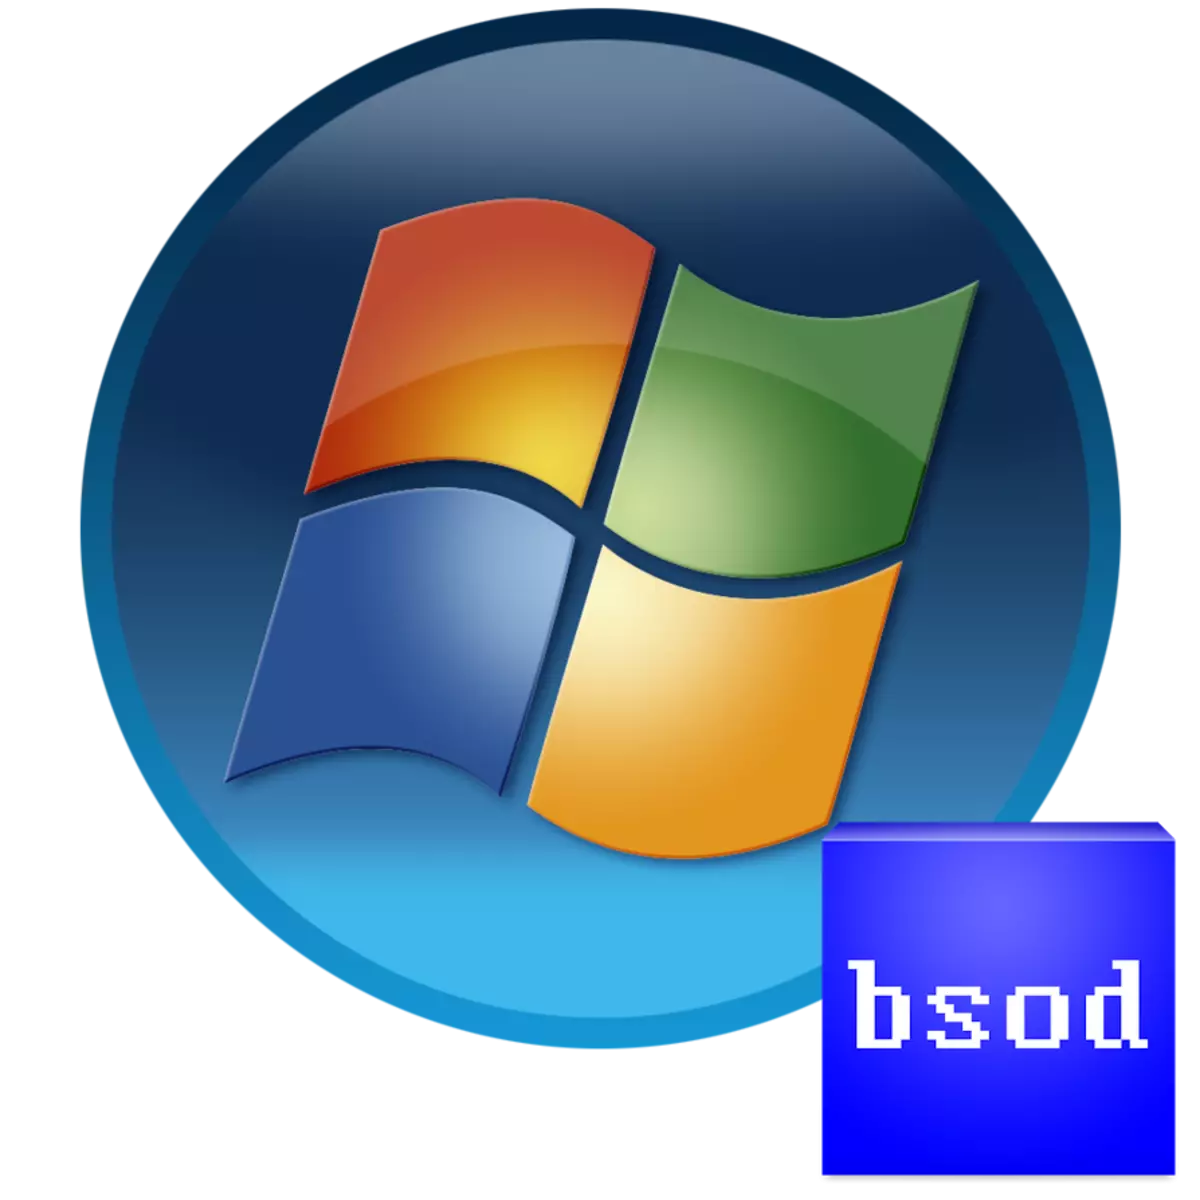 Windowlddmkm.sys માં Windows 7 માં nvlddmkm.sys માં ભૂલ 0x00000116 સાથે વાદળી સ્ક્રીન